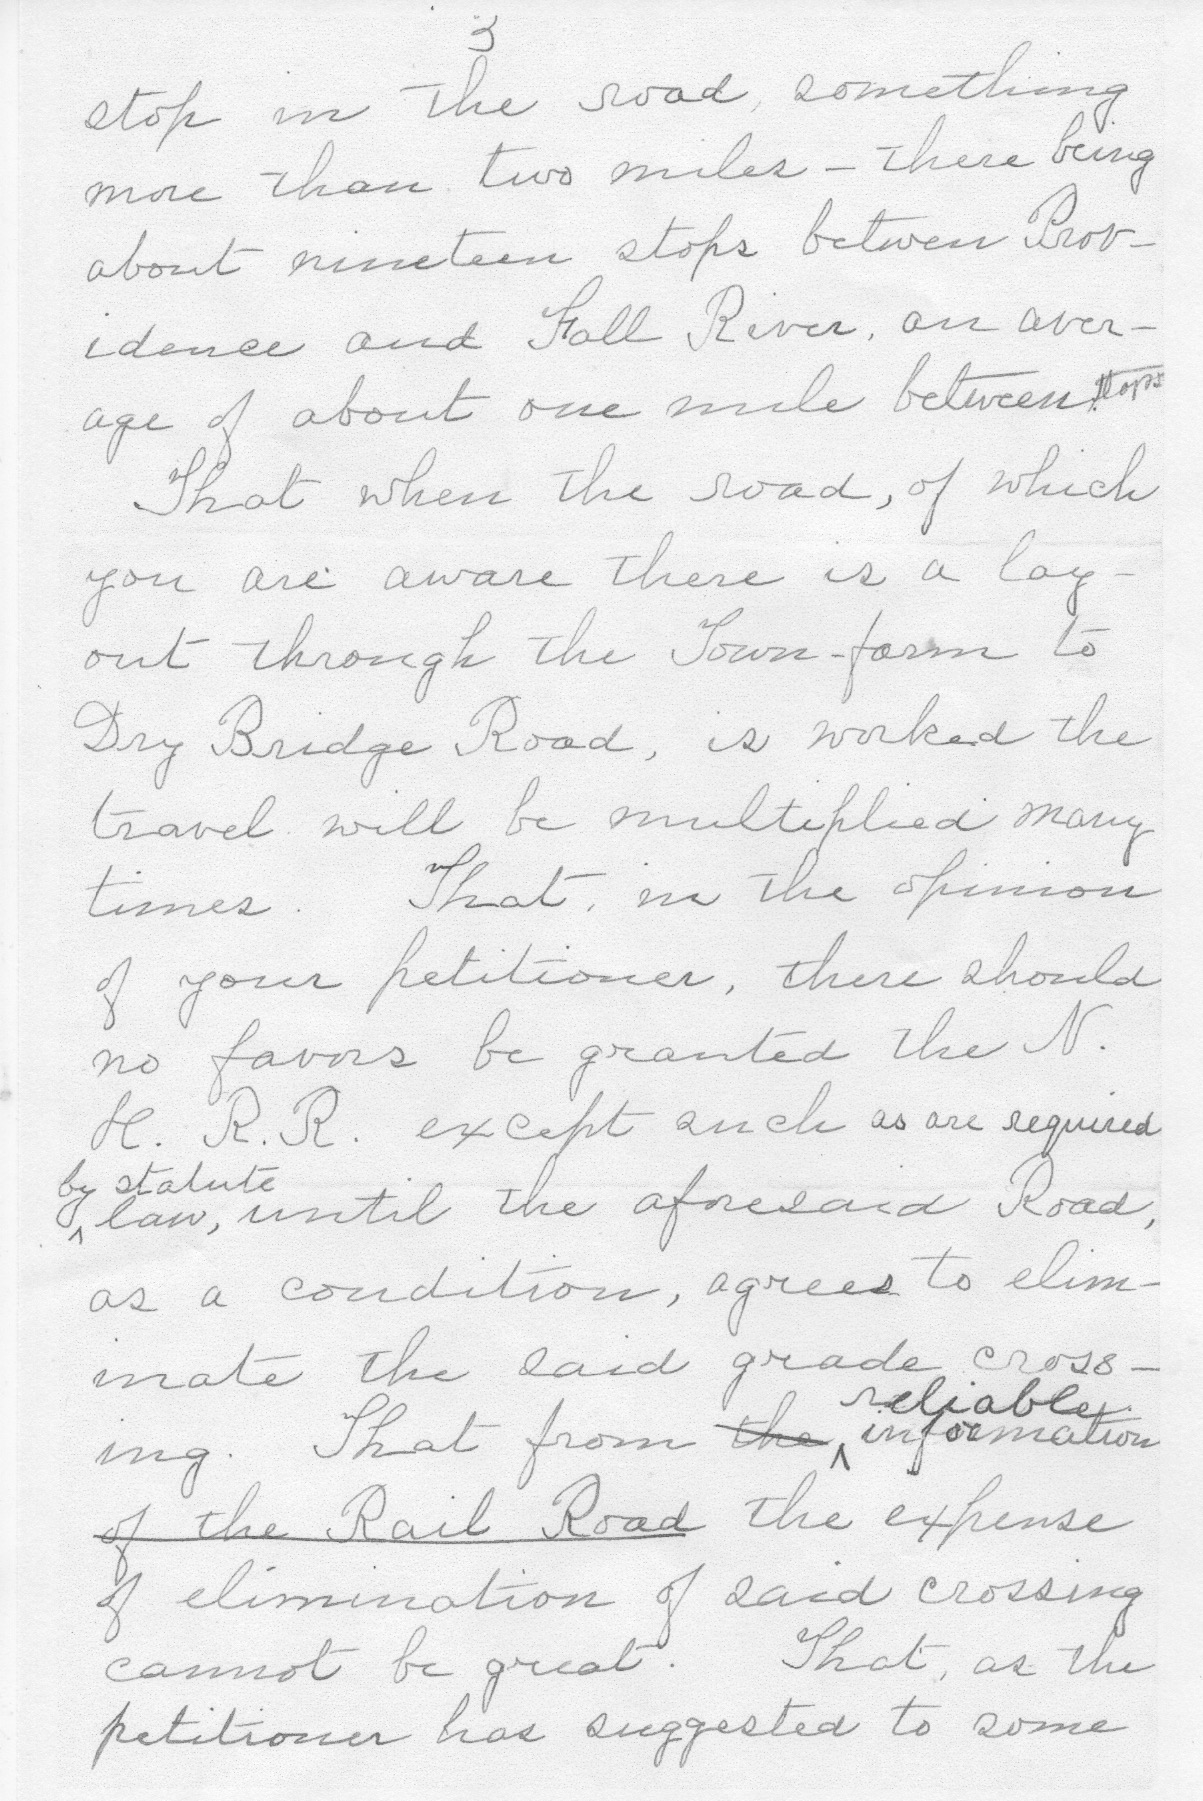 1910 Bowen Letter to Town of Warren